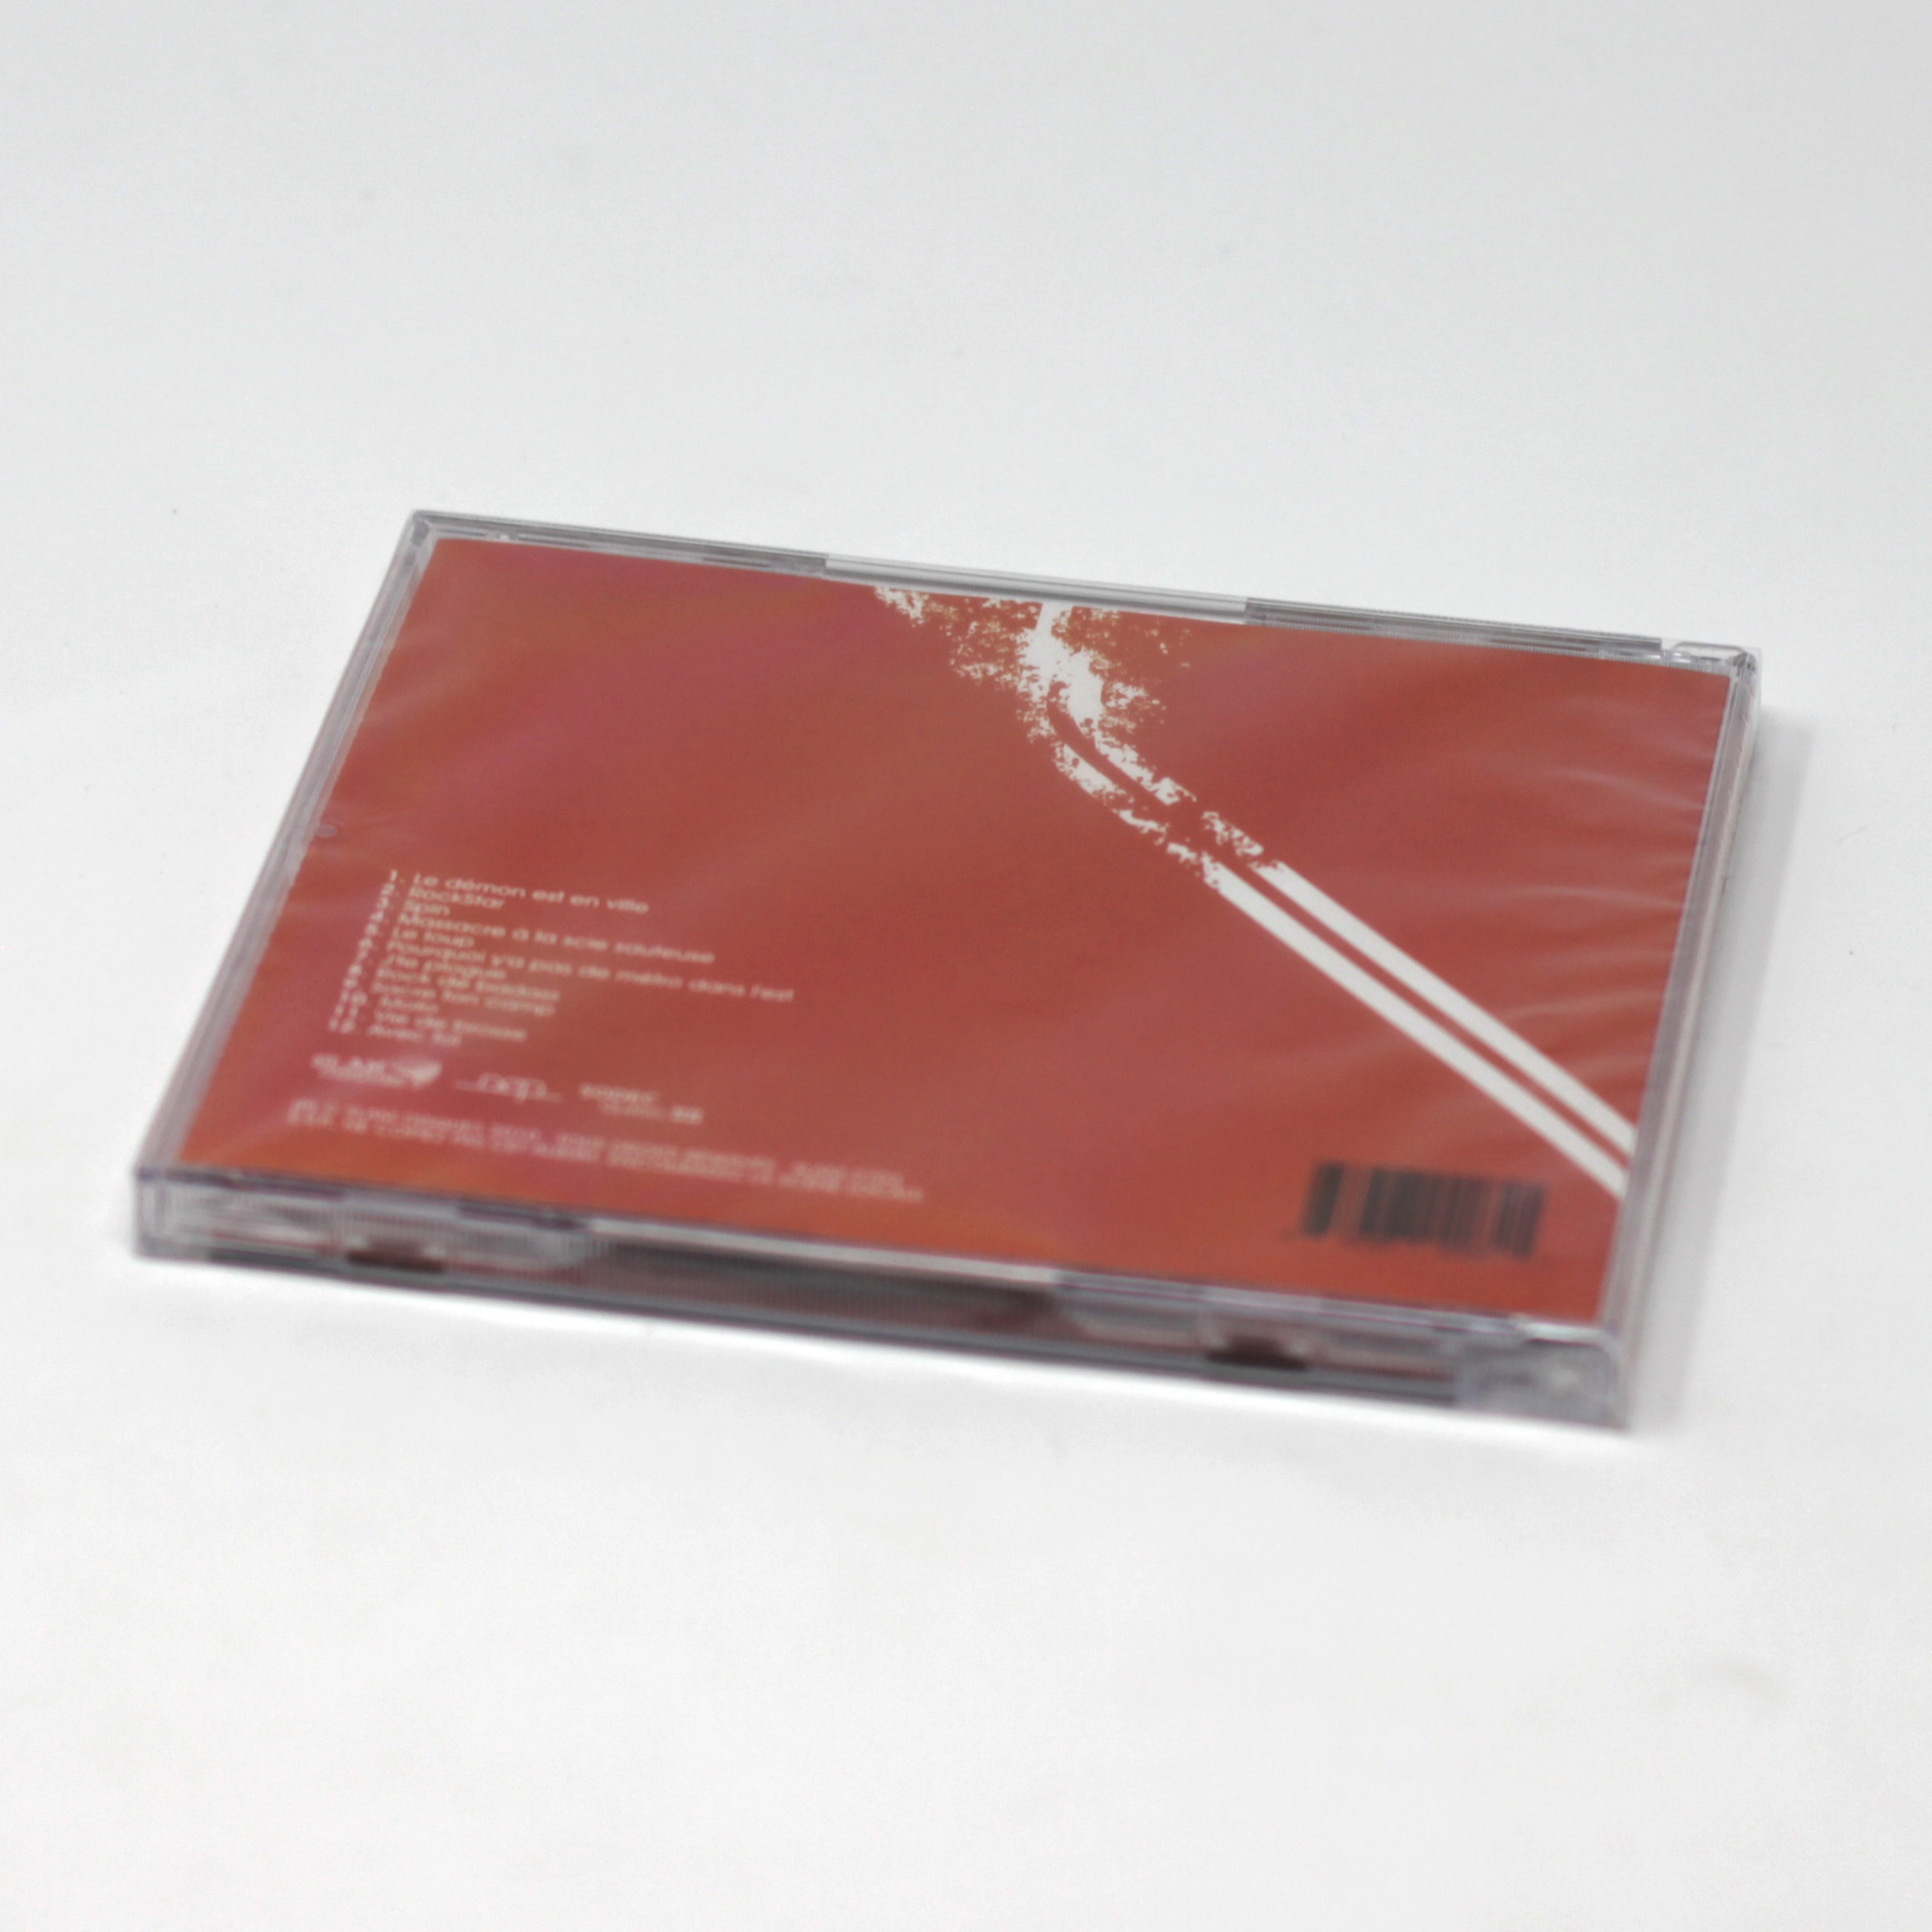 Album “Ripé” (CD) – Ripé